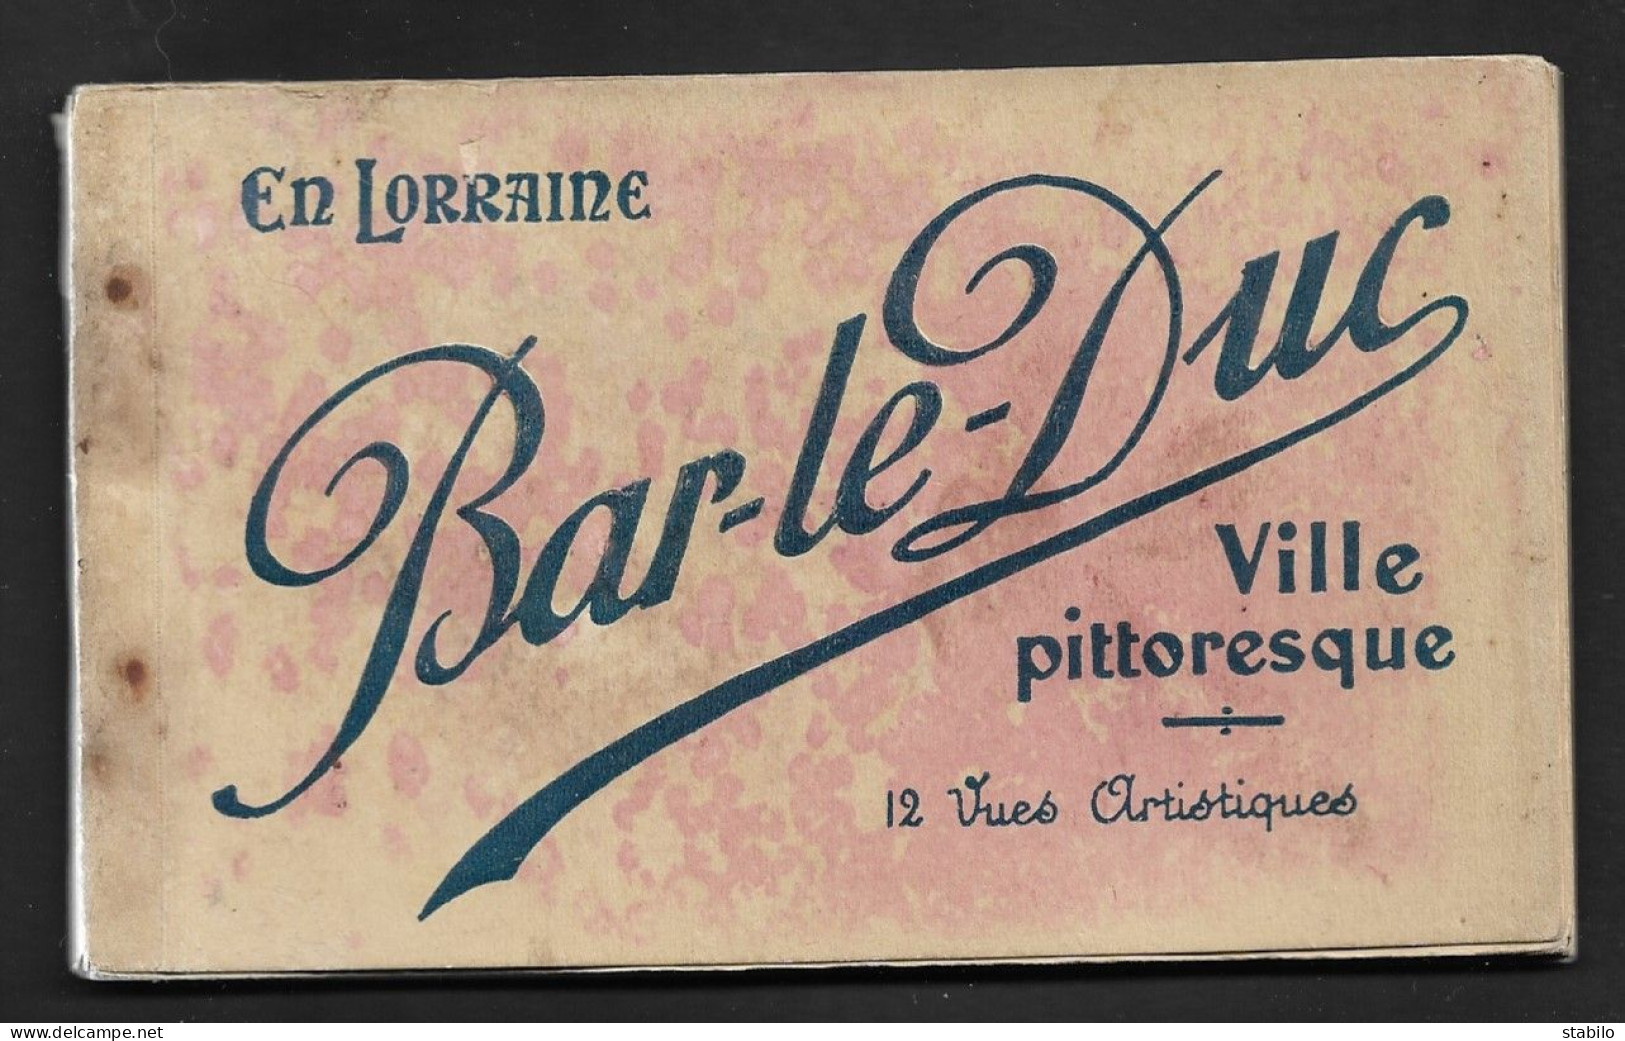 55 - BAR-LE-DUC - CARNET DE 12 CARTES - Bar Le Duc